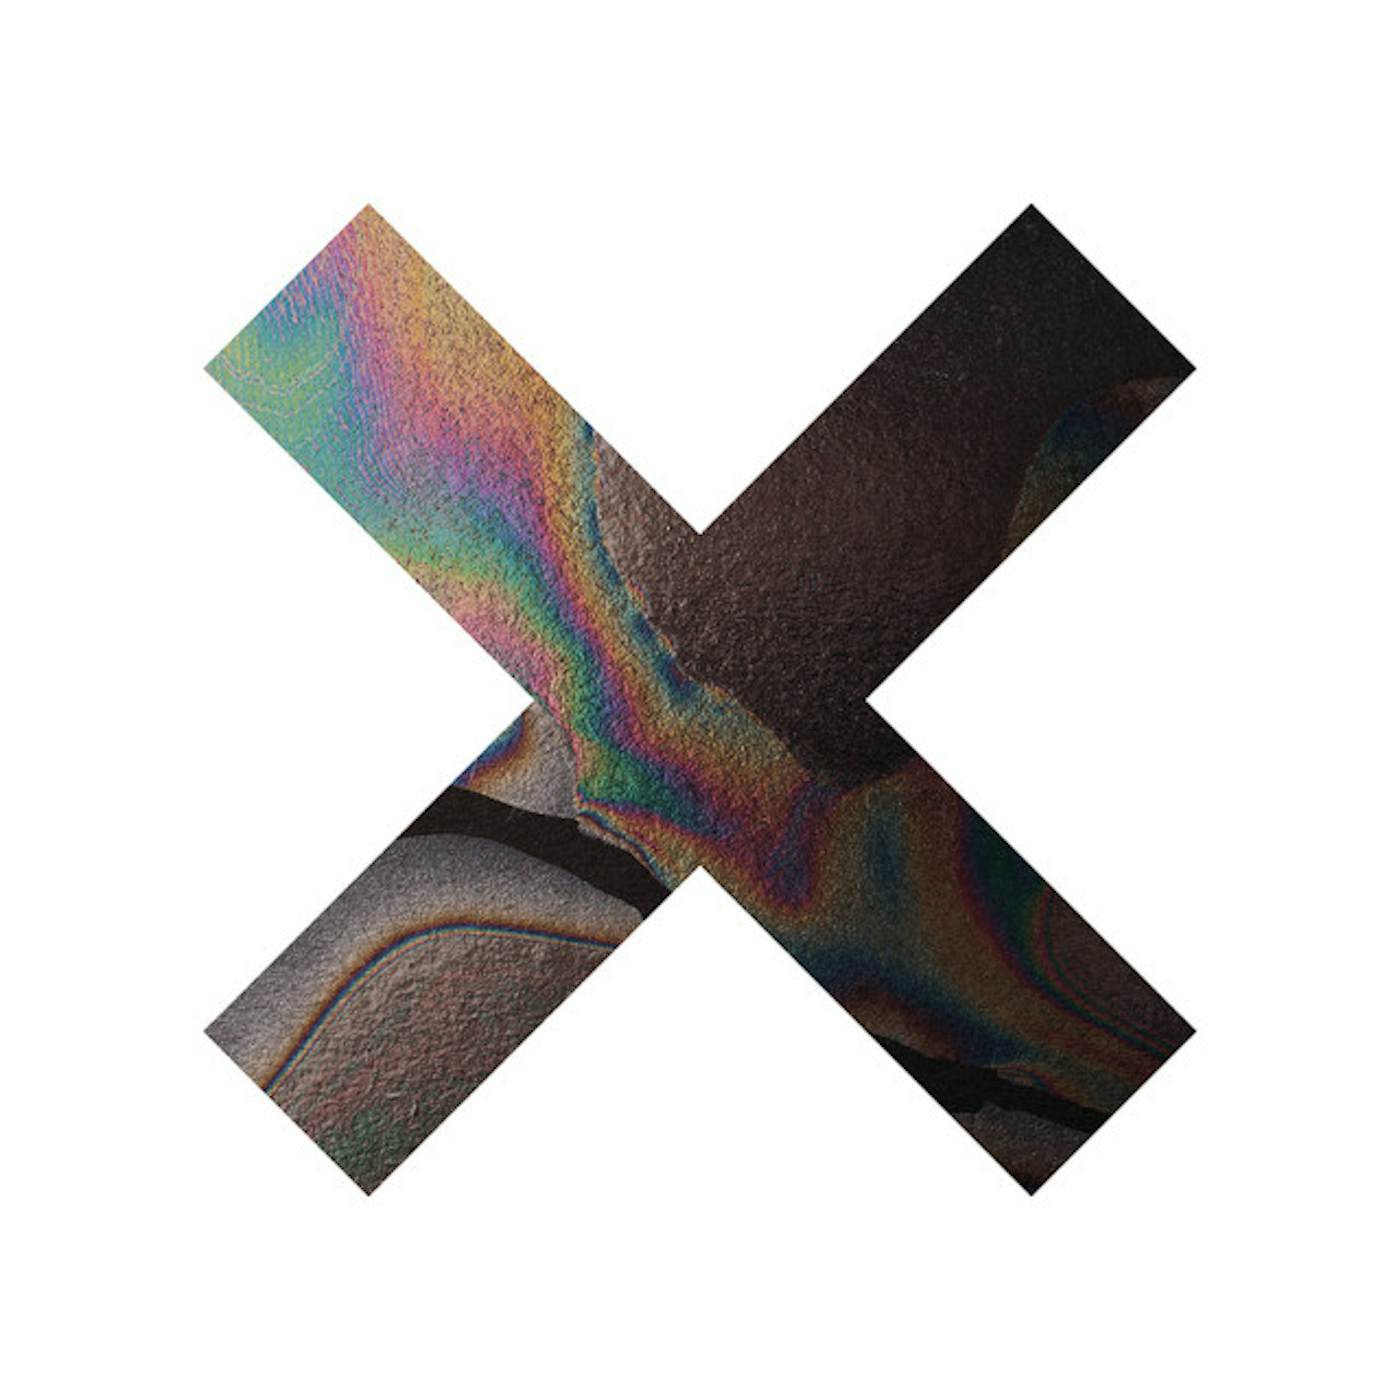 The xx Coexist Vinyl Record